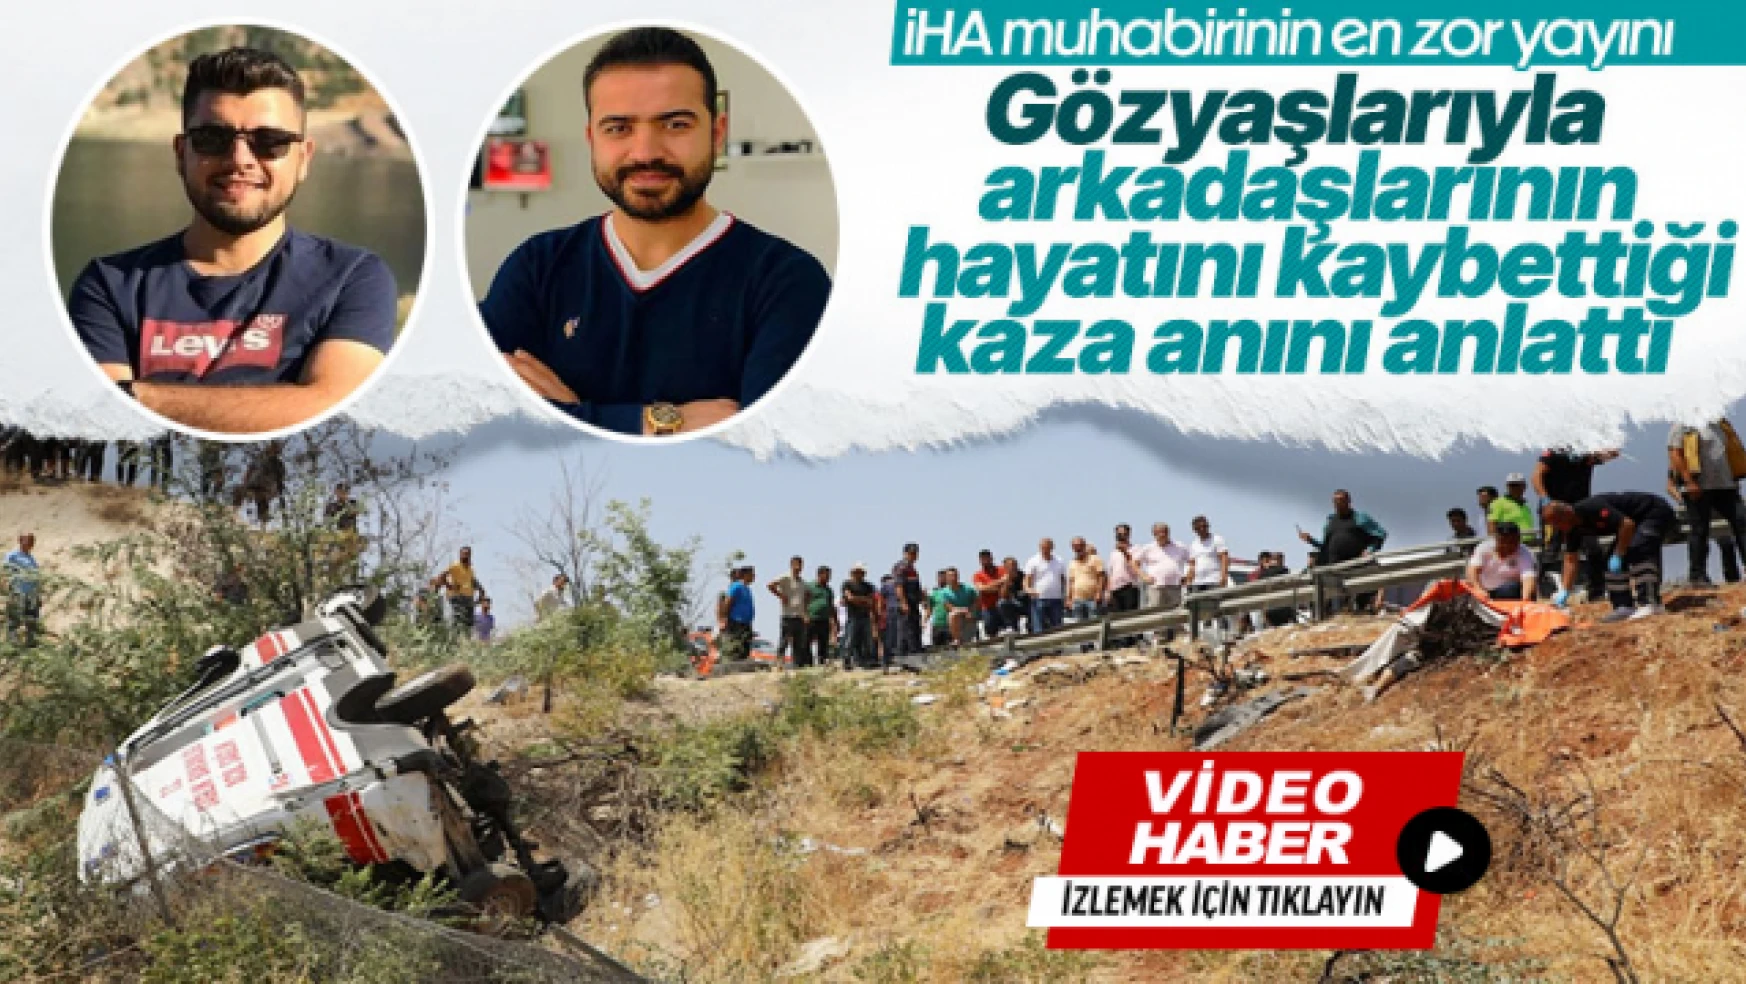 Gaziantep'te yaşanan kazayı anlatan muhabir gözyaşlarını tutamadı